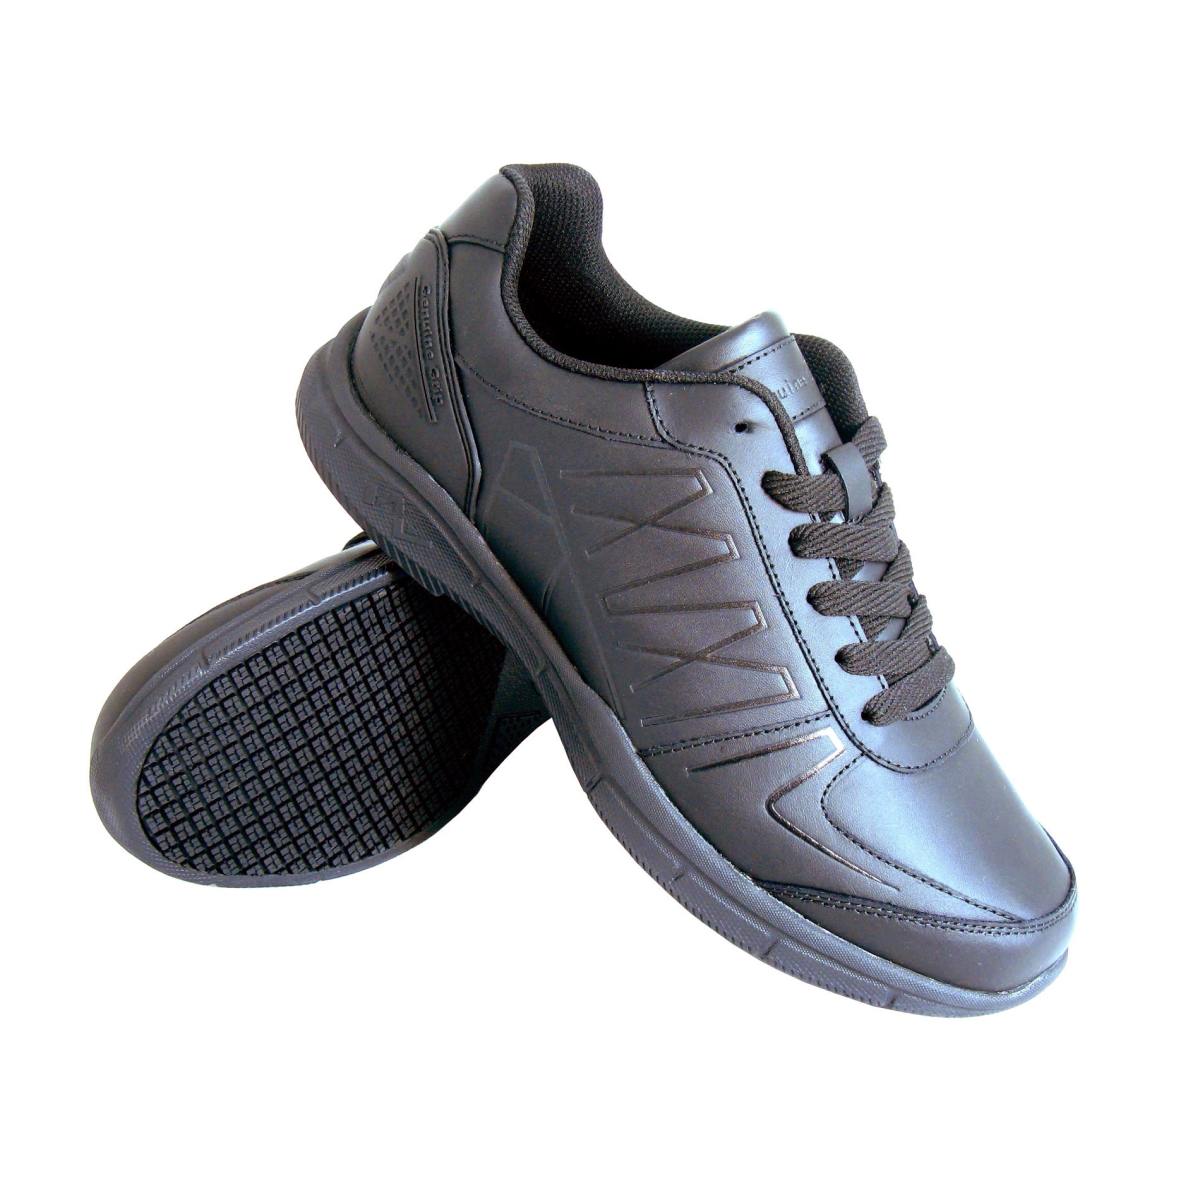 size 14 slip resistant shoes